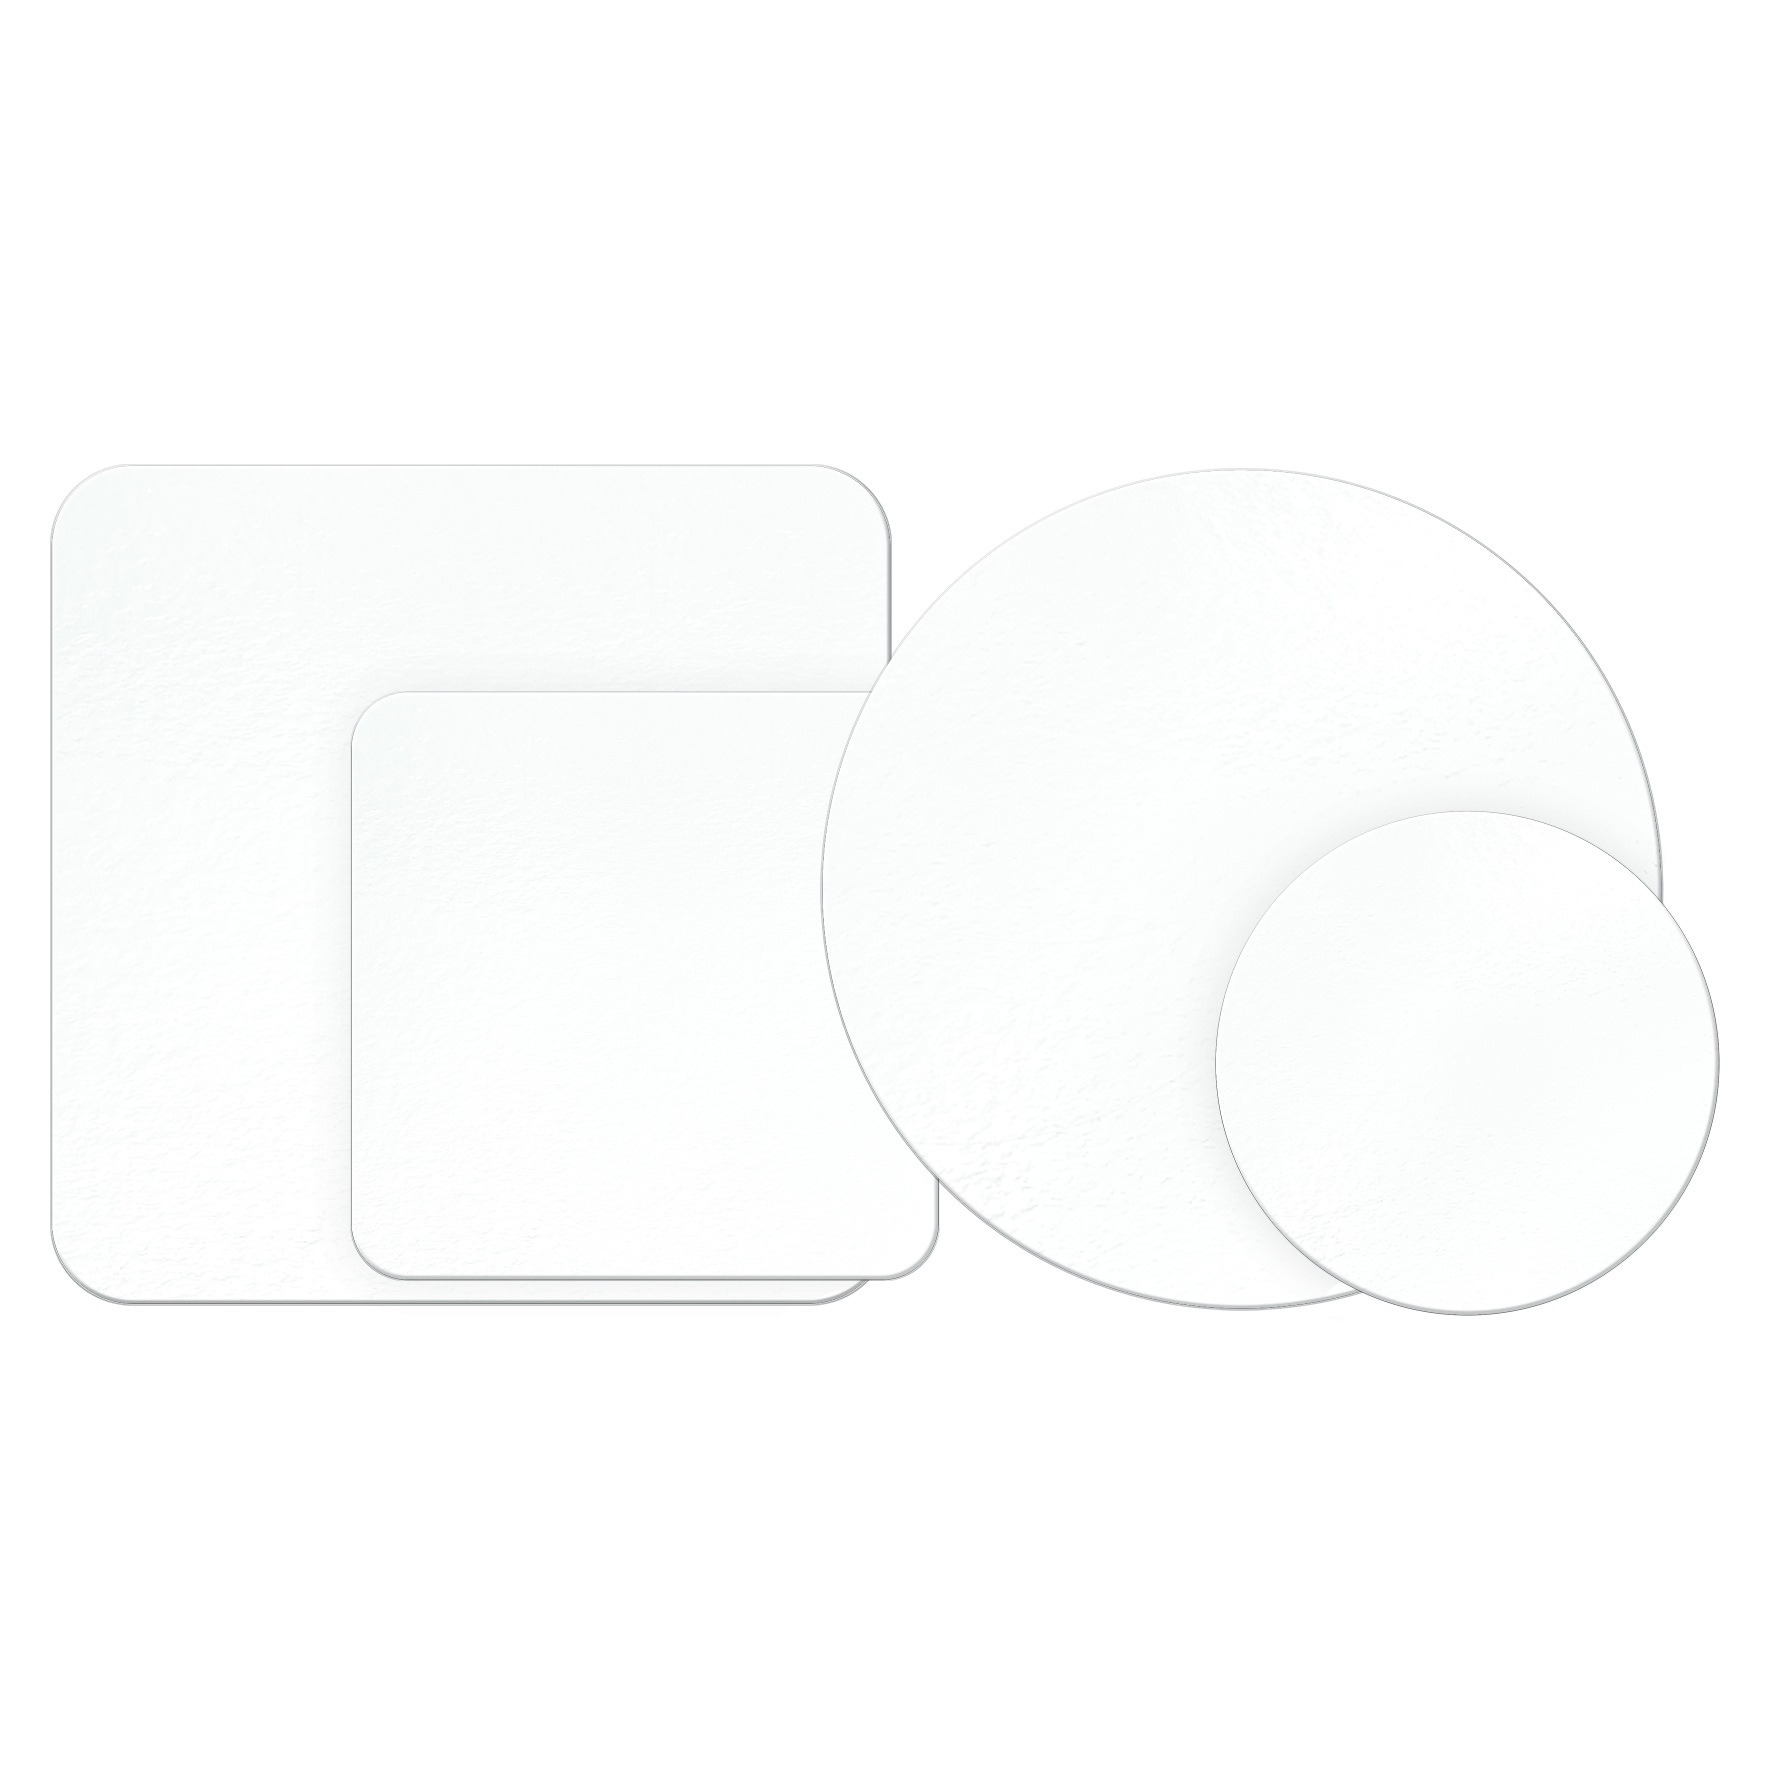 Obrázek k výrobku 20175 - Podnos bielo-čierny hrubý kruh 30 cm (1 ks)